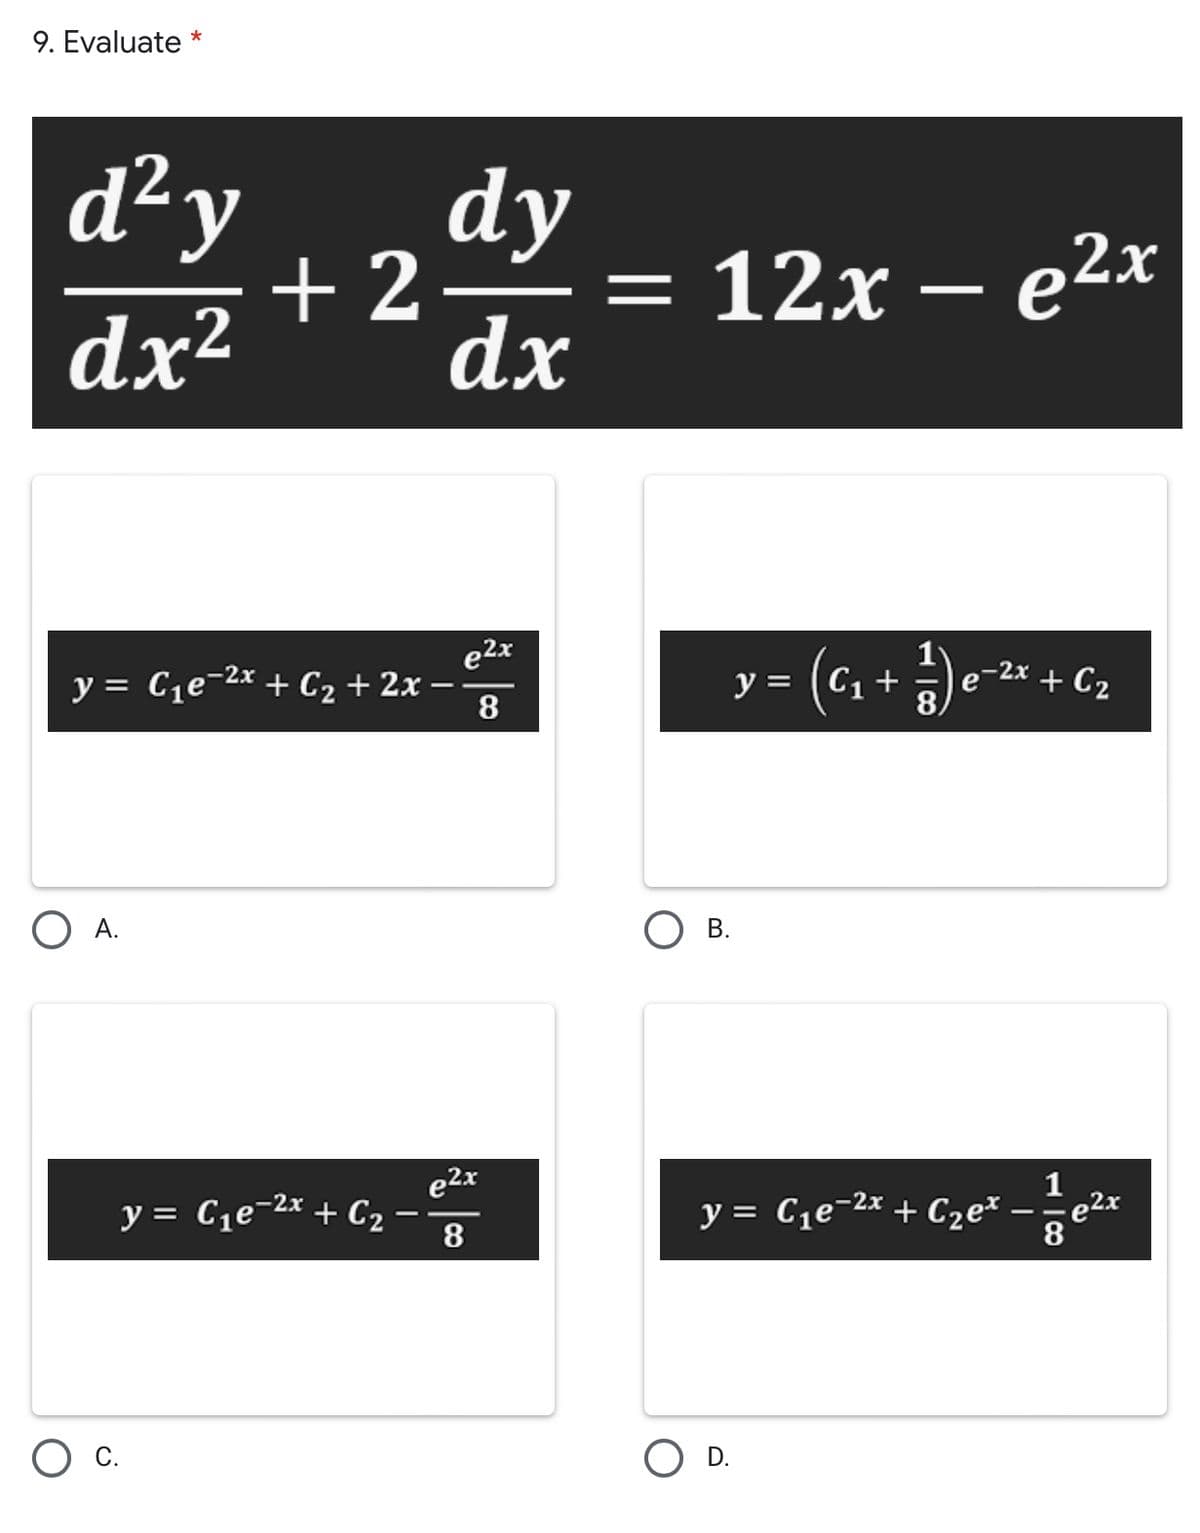 9. Evaluate *
d²y
dy
+2
— 12х — е2x
-
dx²
dx
e2x
y = C1e-2x + C2 + 2x
8
y = (C1 +
e-2x + C2
%3D
А.
В.
1
y = C1e-2x + C2
8
y = Ce-2x + Cze*
e2x
8.
С.
D.
